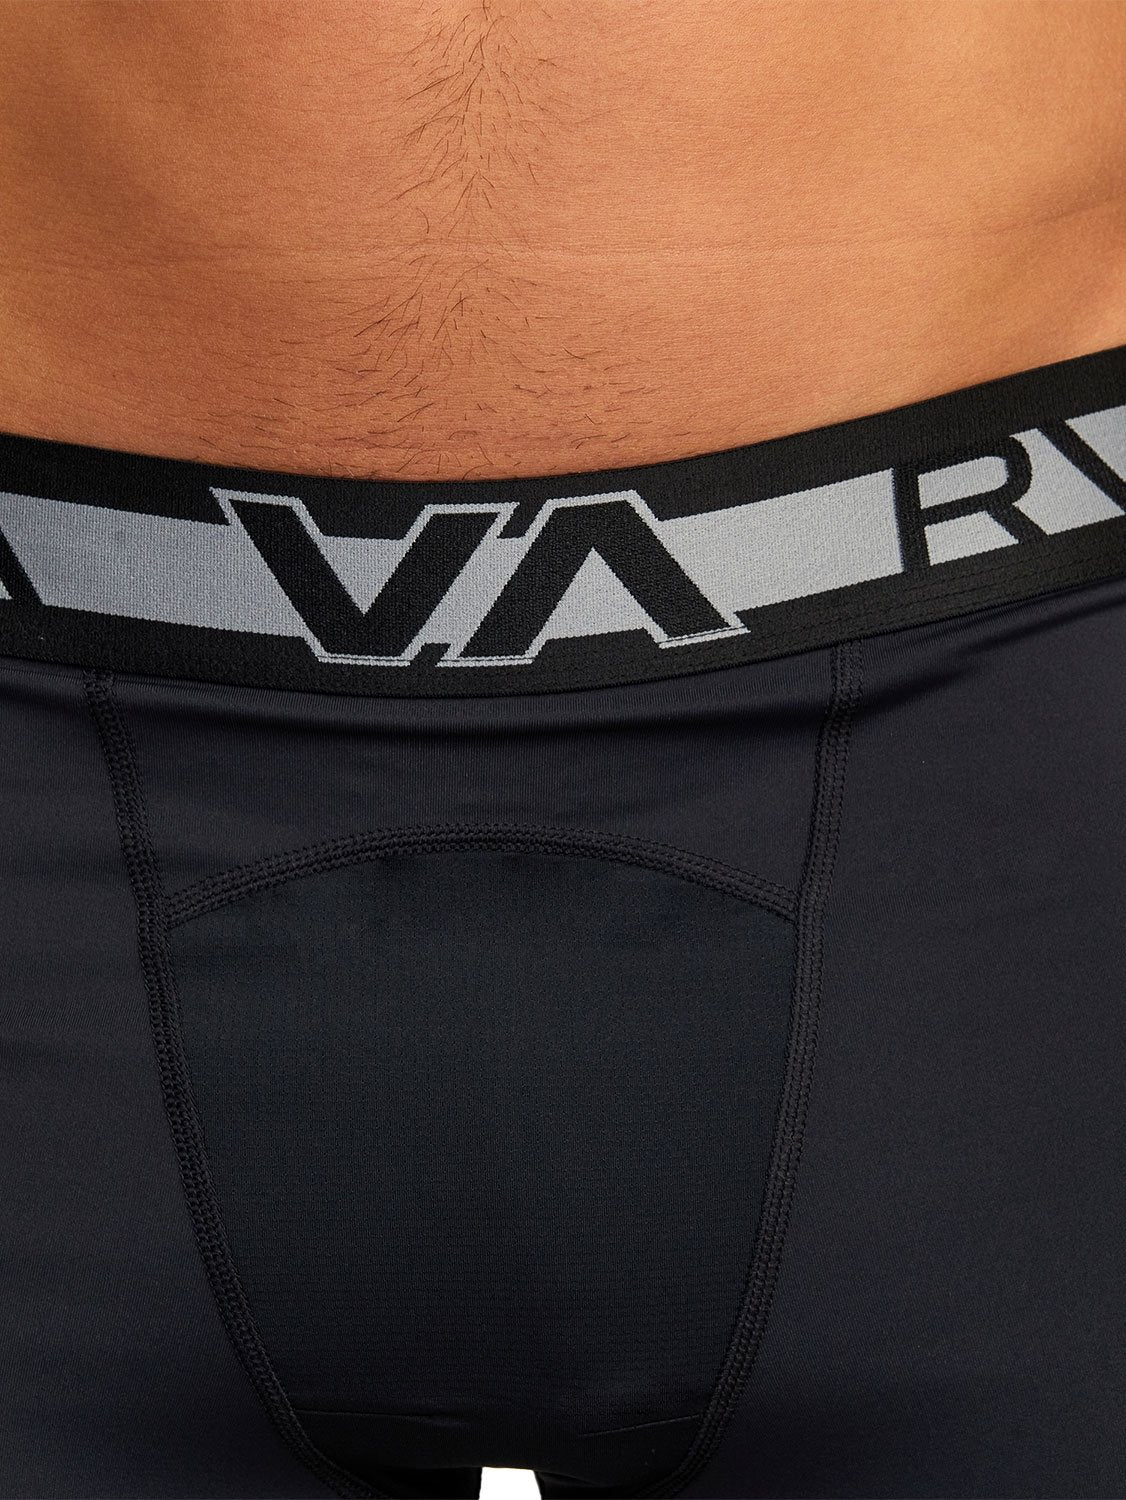 RVCA Men's Compression Pant